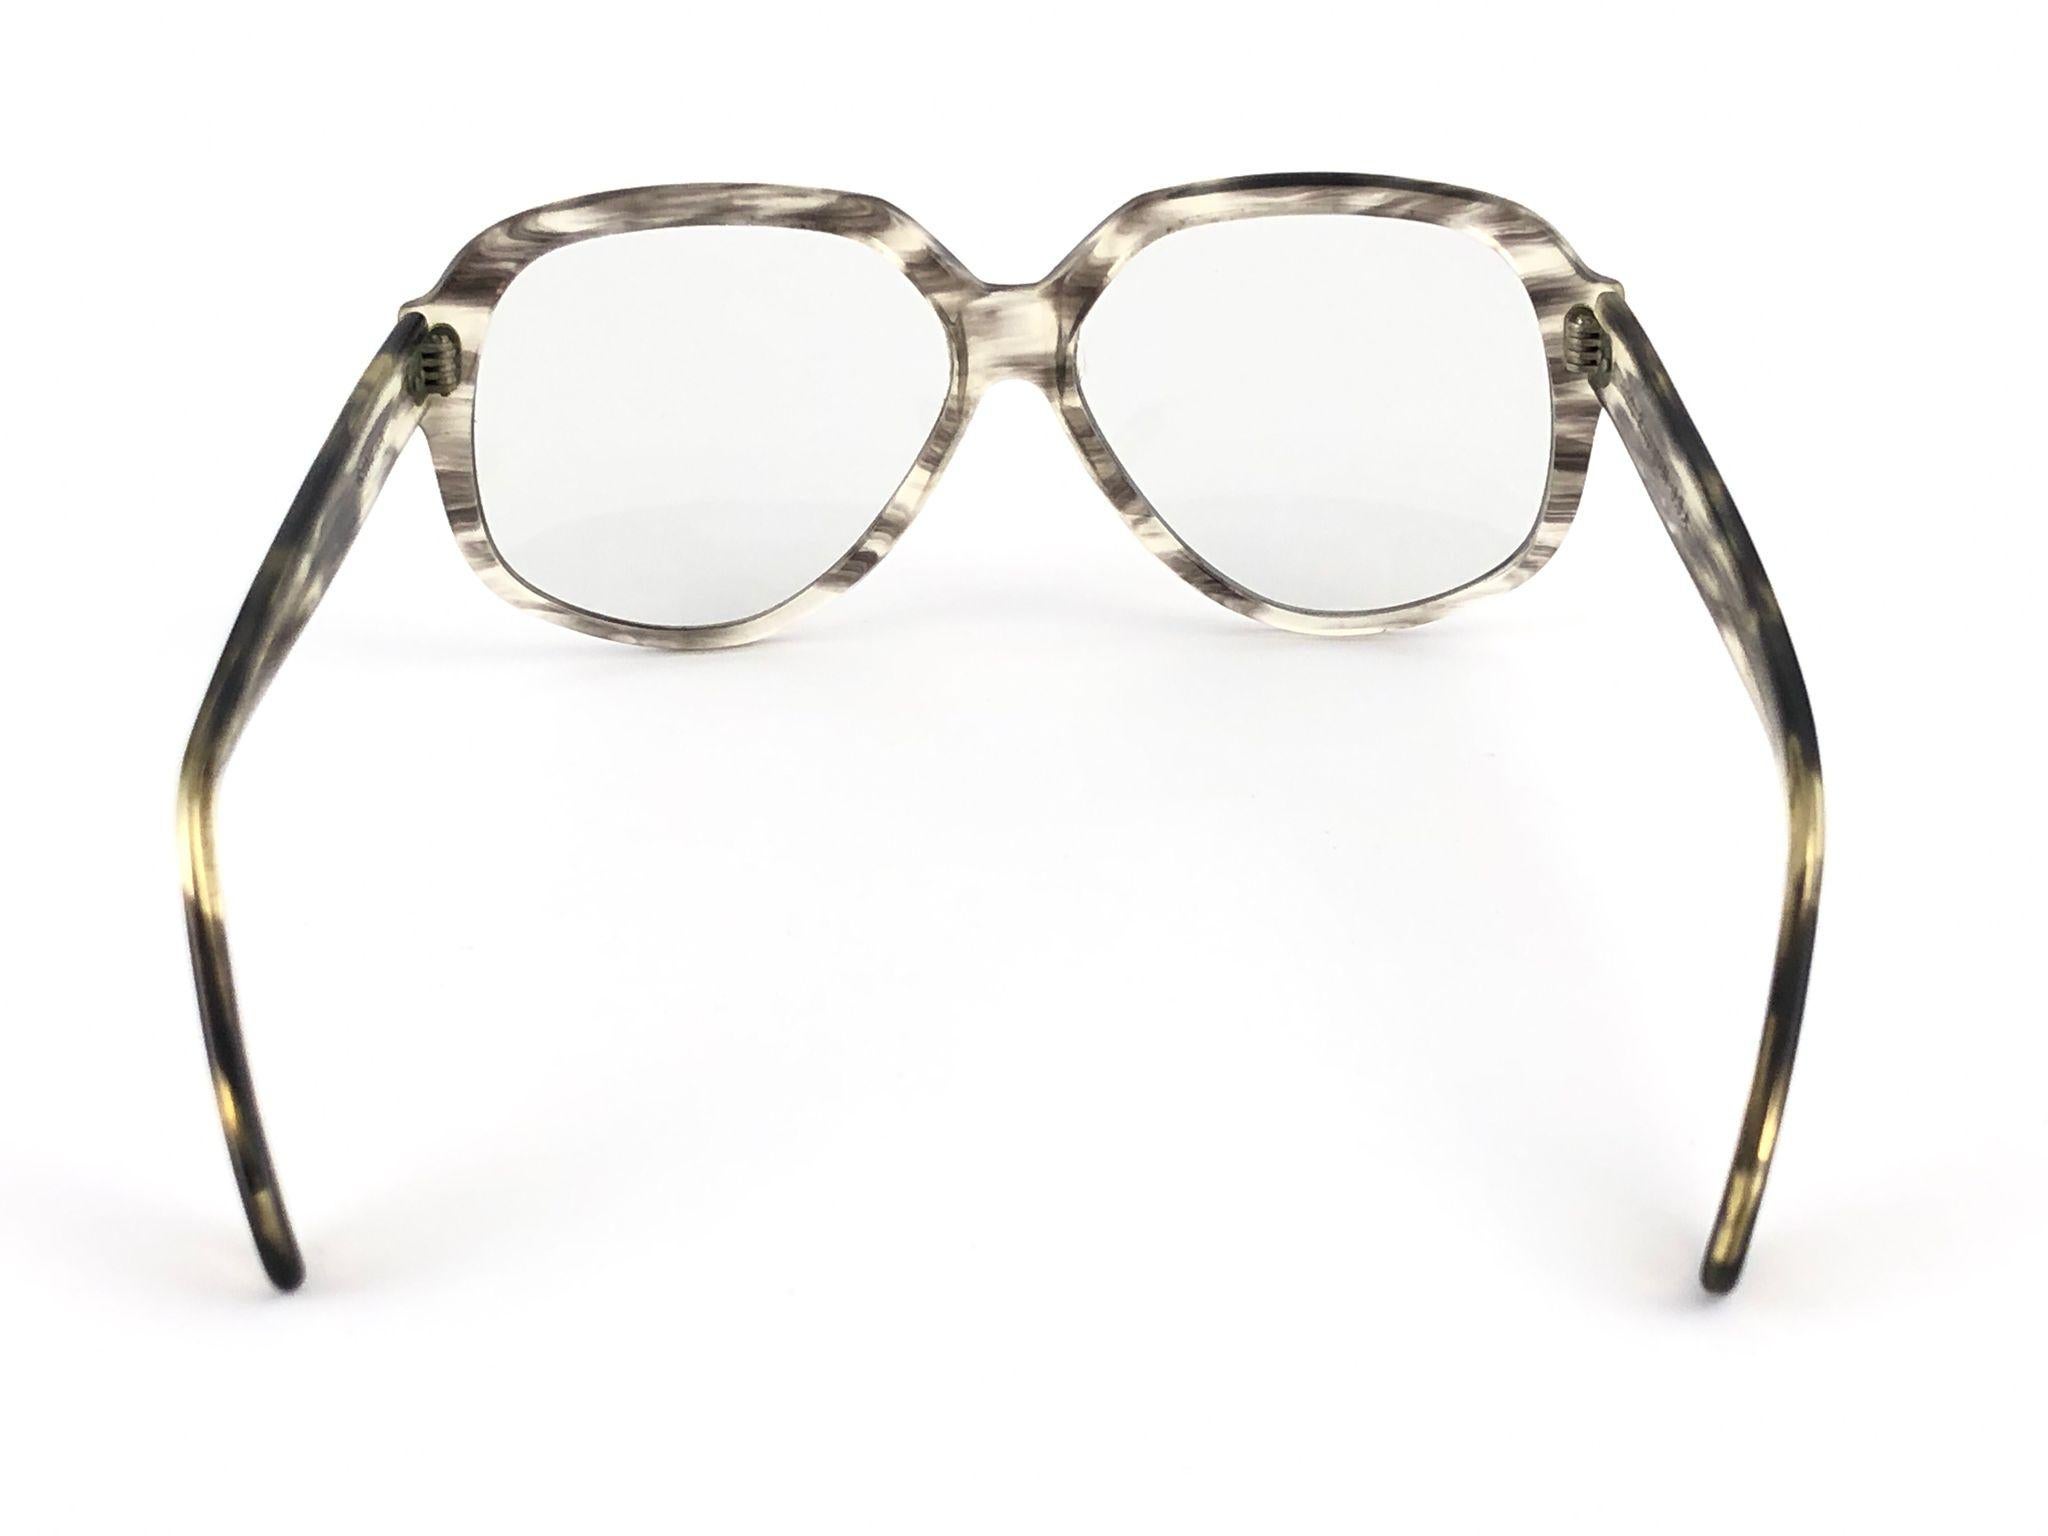 Women's or Men's Rare Vintage Ray Ban B&L Gavilan Oversized Light Lens Sunglasses 1970's USA Made For Sale